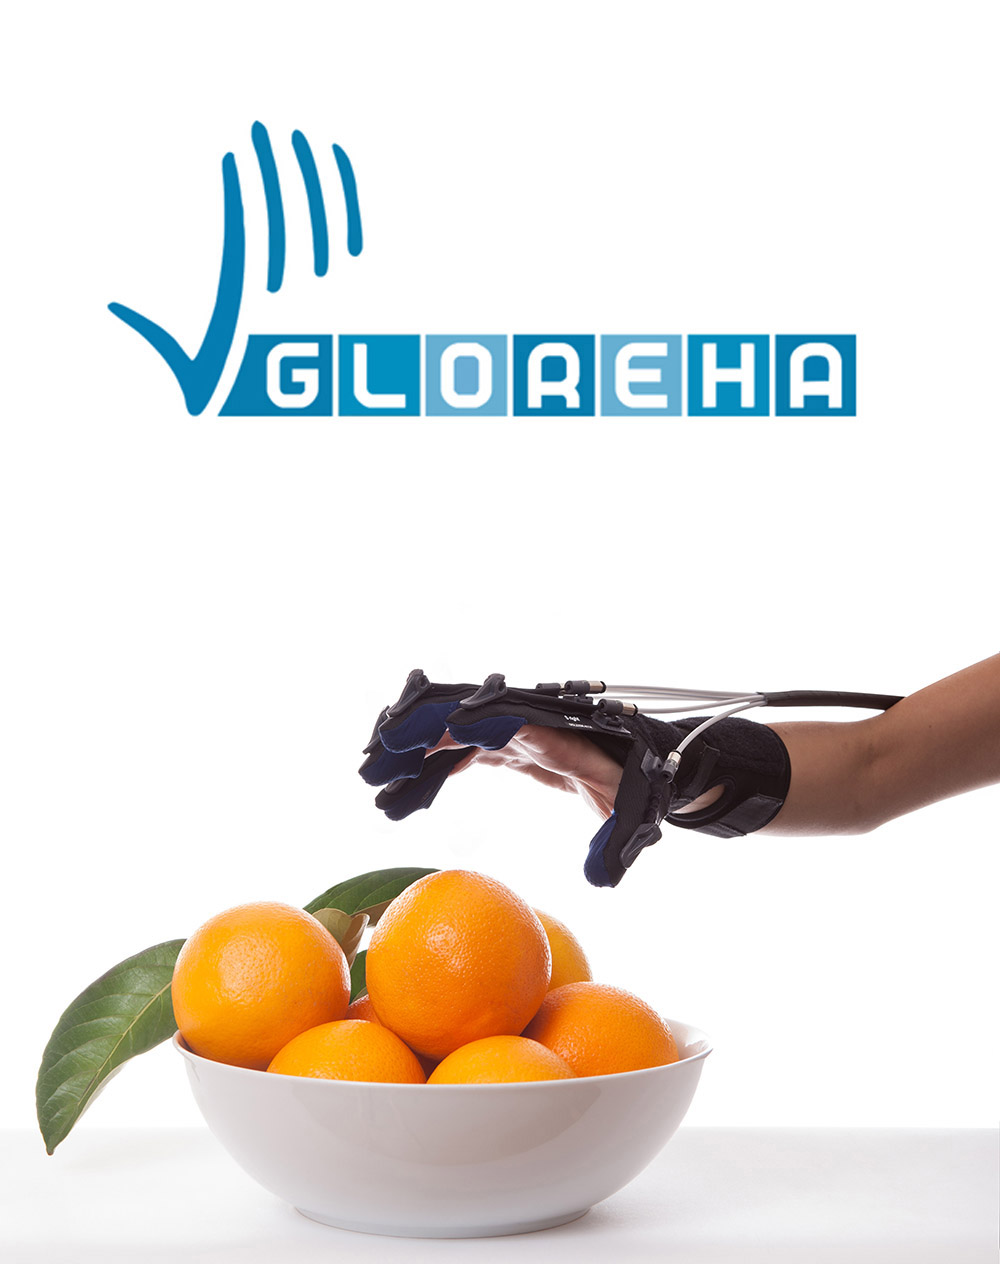 Handreha - Handtherapie und Handrehabilitation mit der Gloreha in der Ergotherapie ergotherapeutisch - Logo